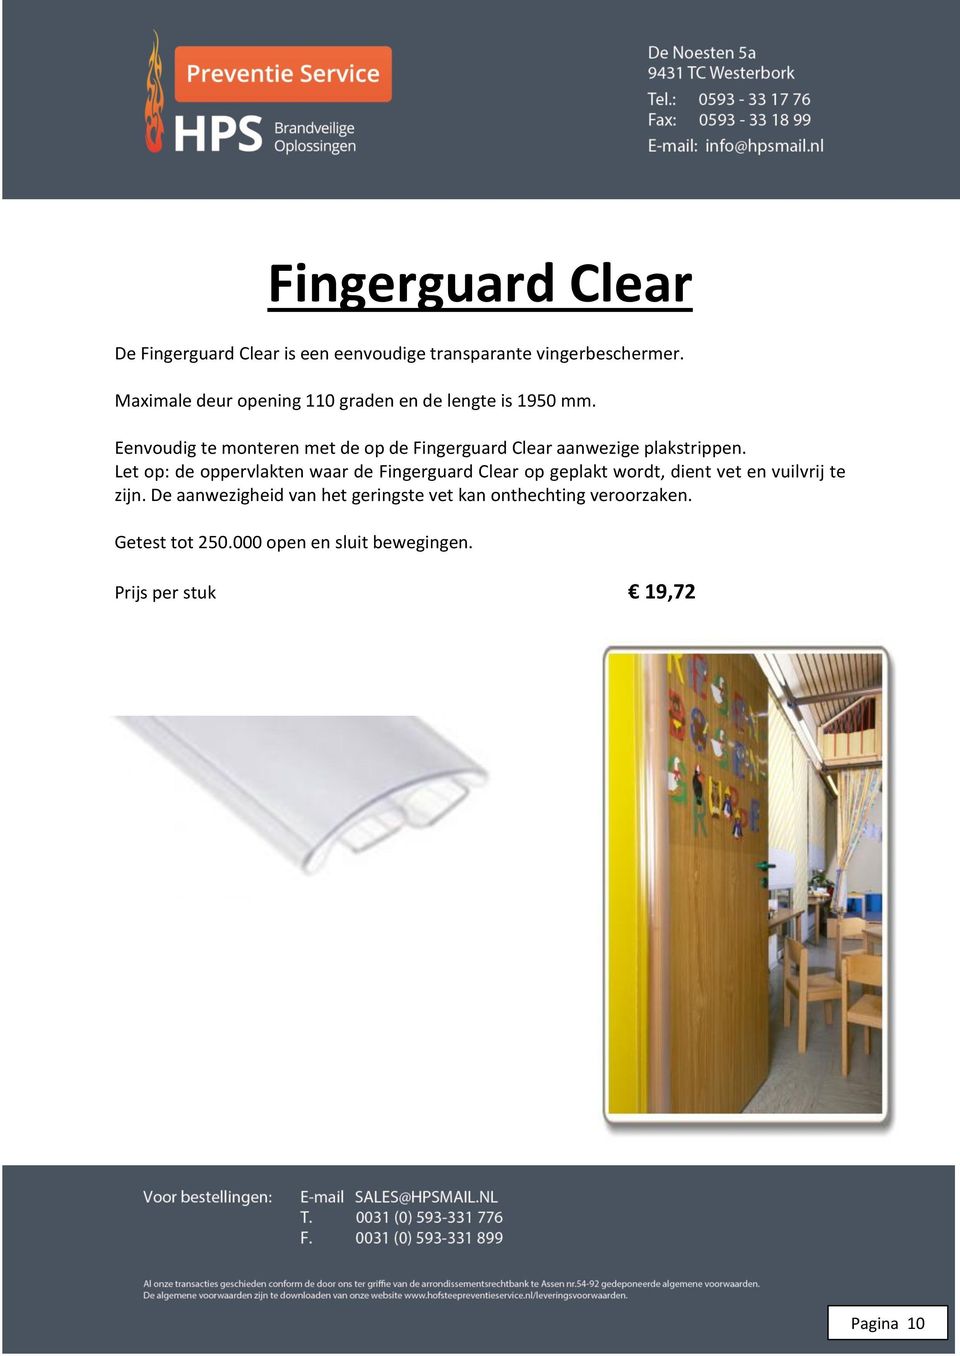 Eenvoudig te monteren met de op de Fingerguard Clear aanwezige plakstrippen.